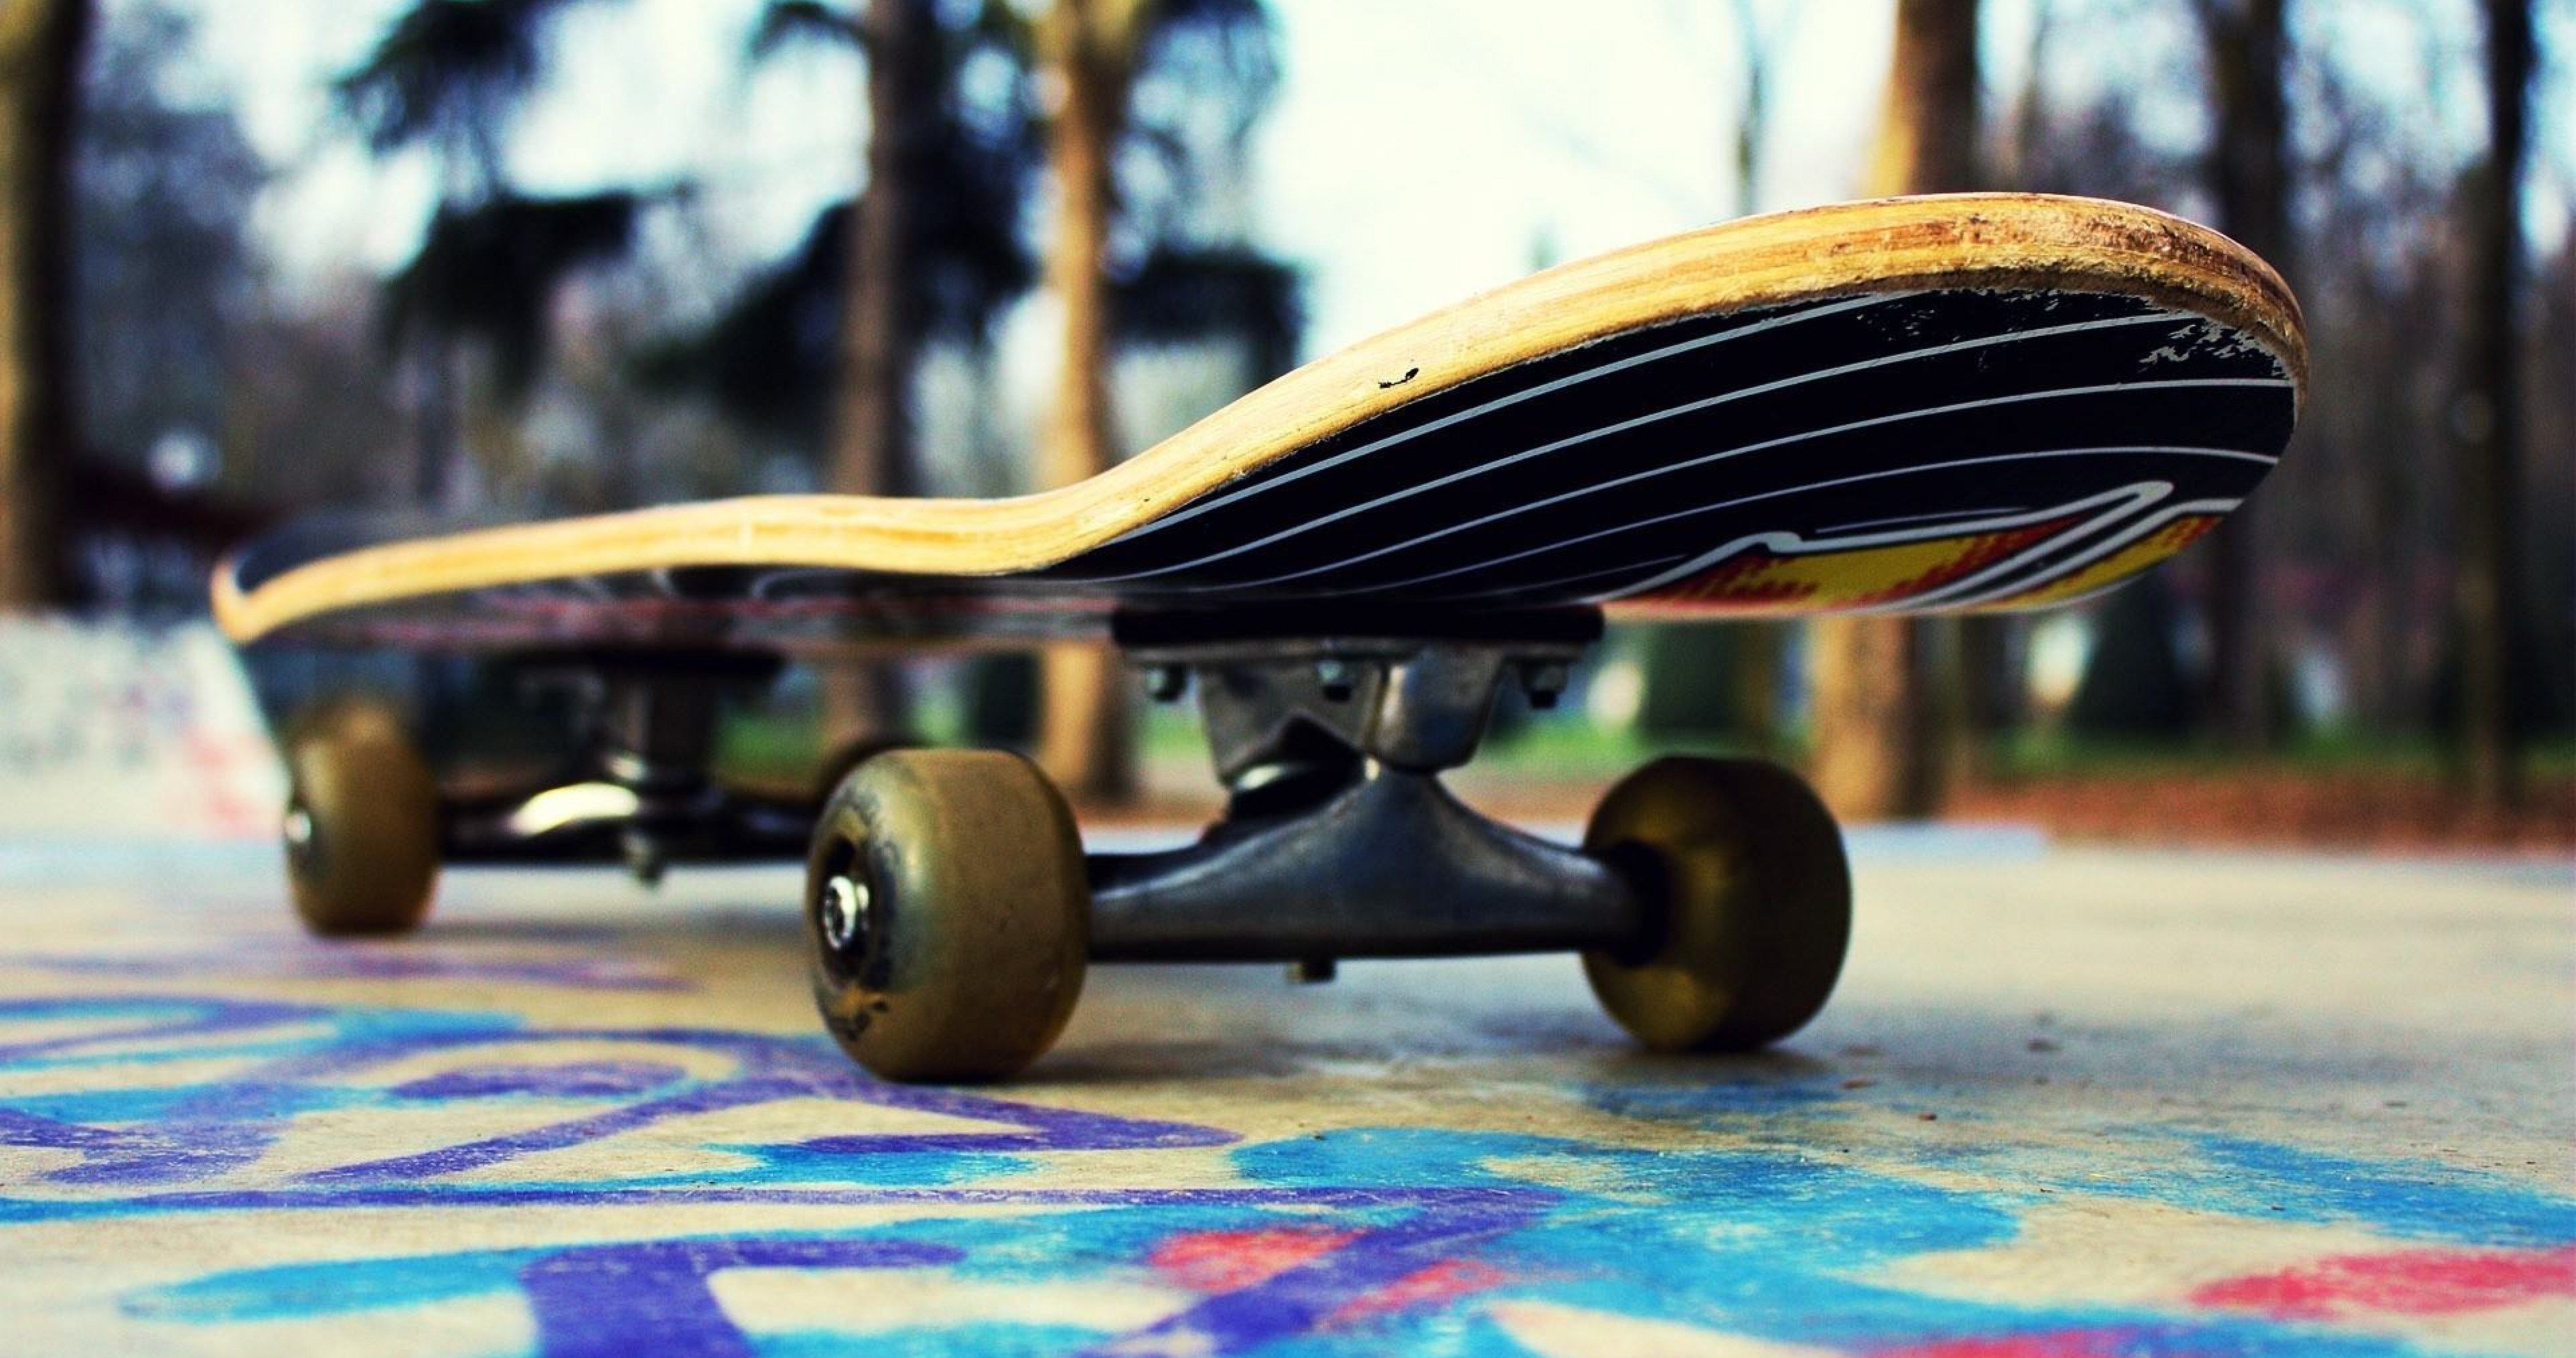 coole skateboard tapeten,skateboard,longboard,longboarding,skateboarding,sportausrüstung